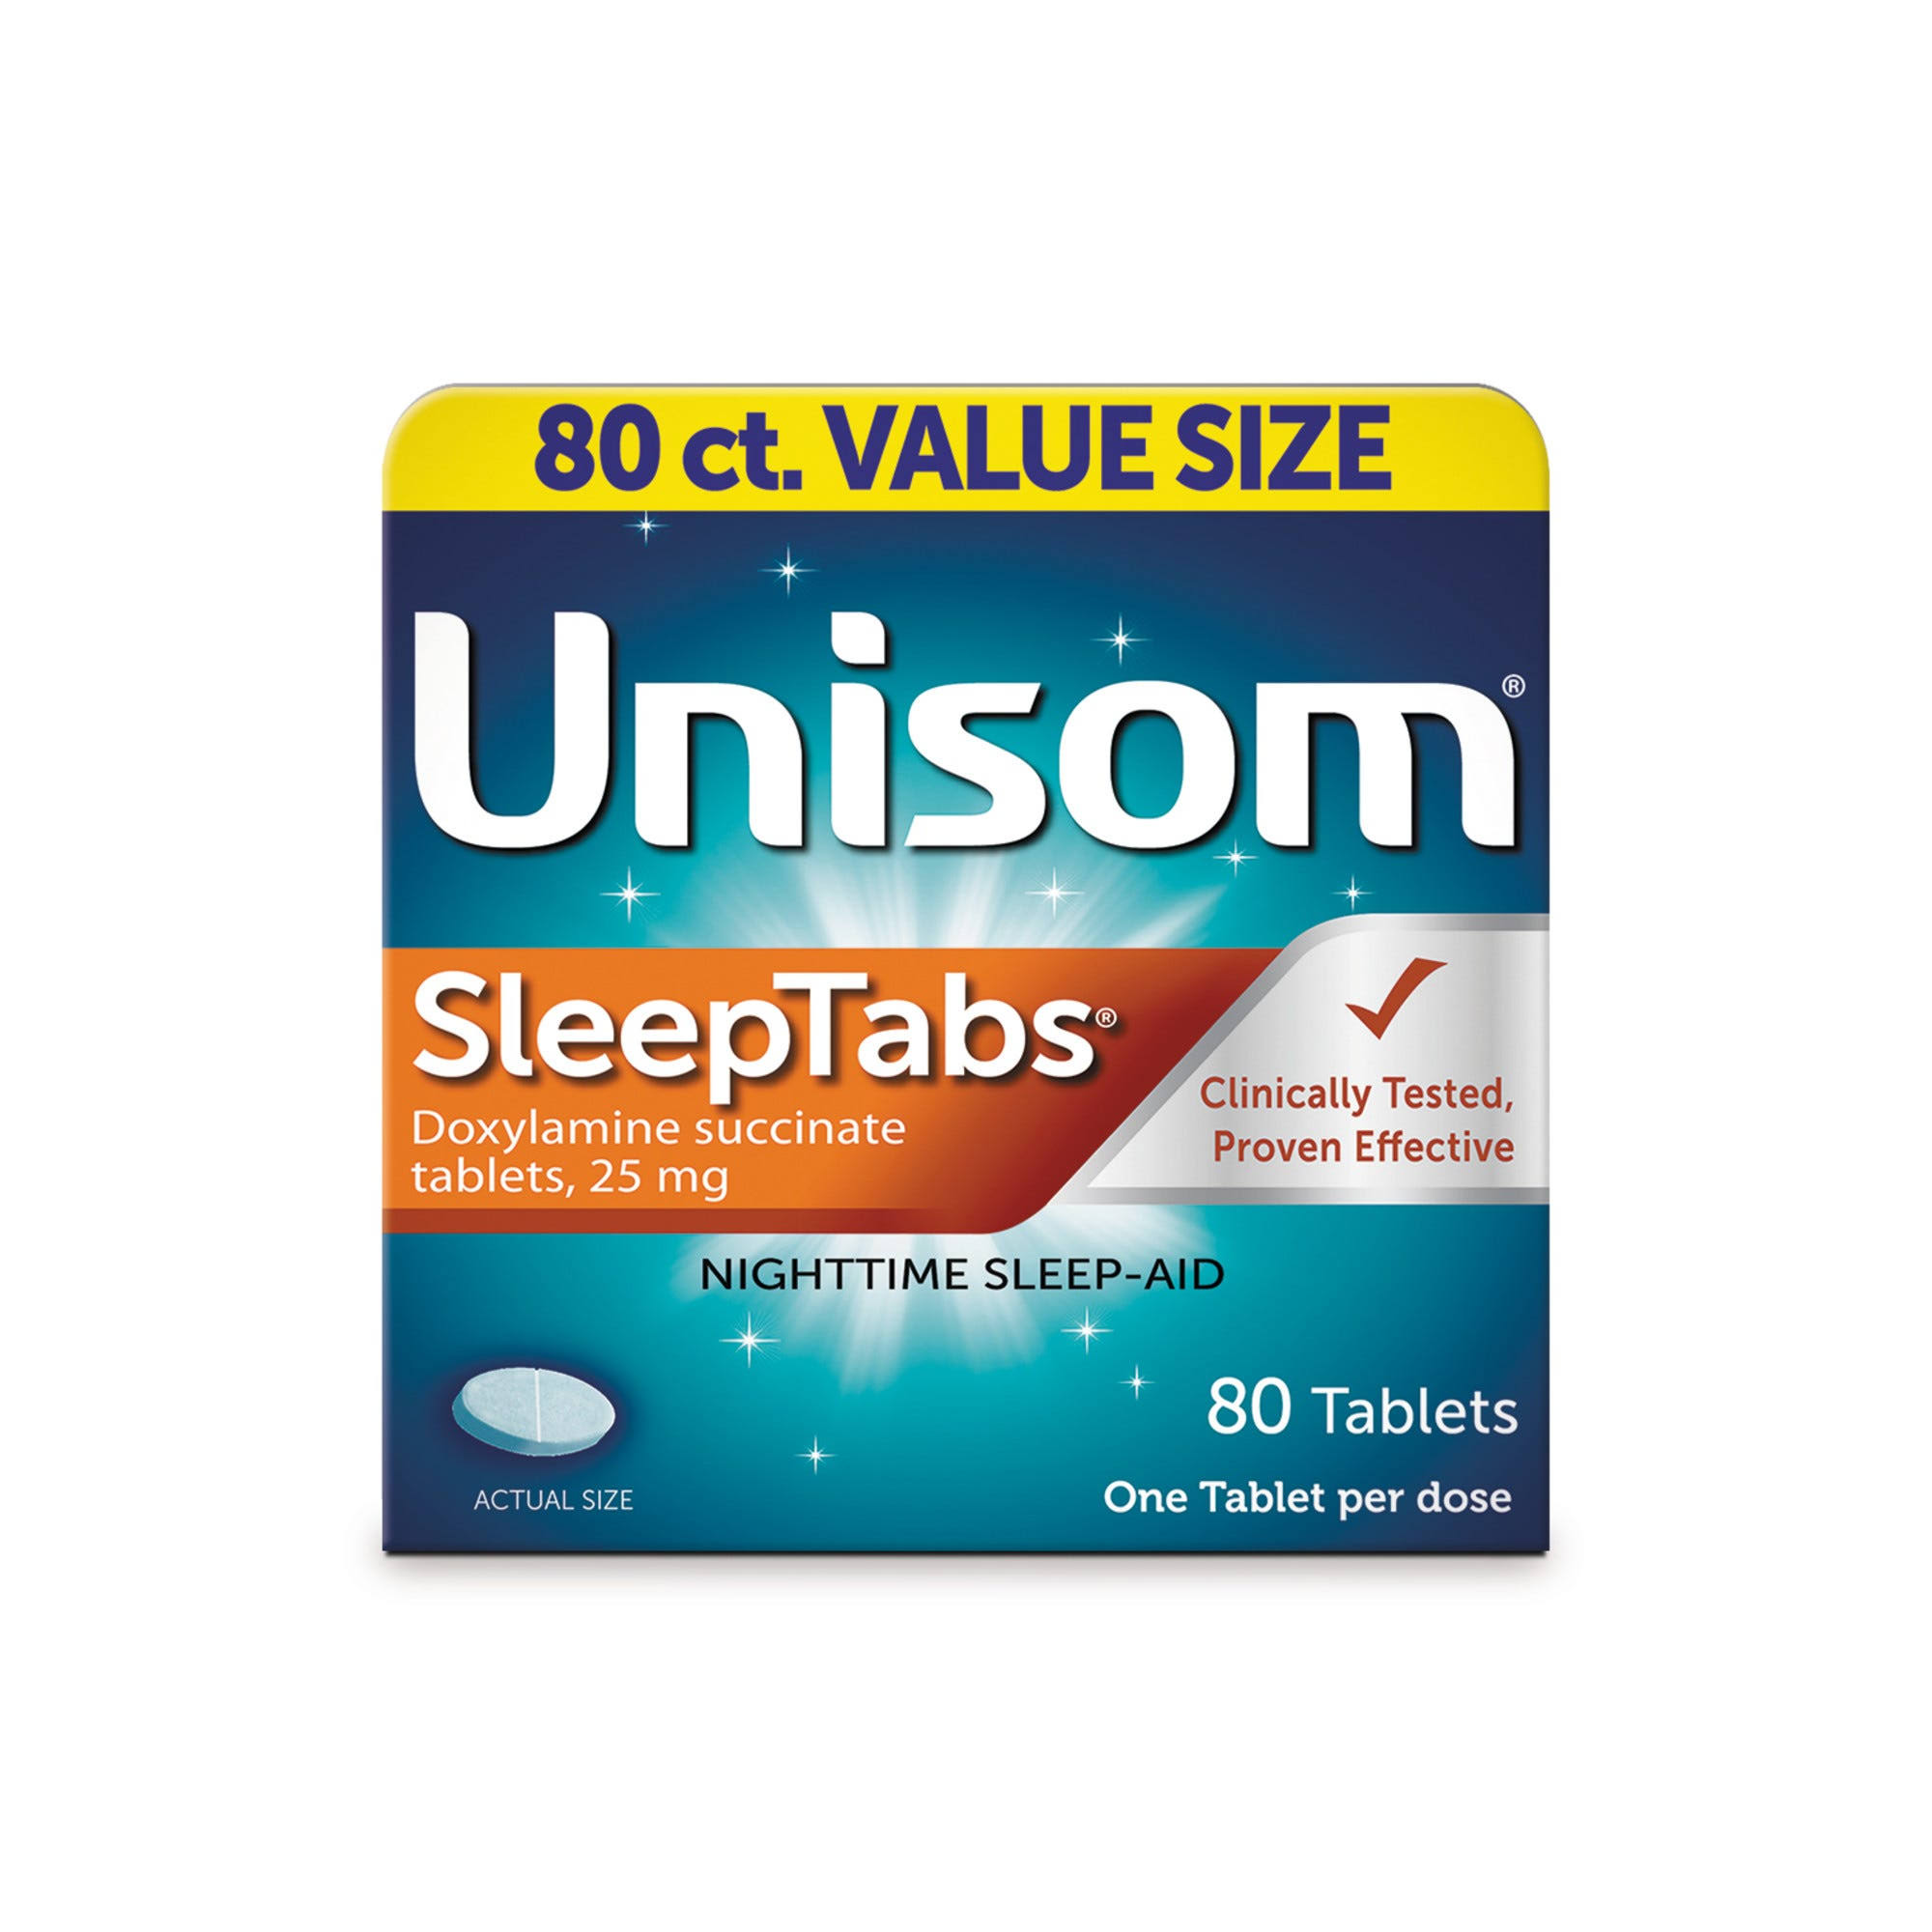 Unisom SleepTabs Nighttime Sleep Aid Tablets - 80ct